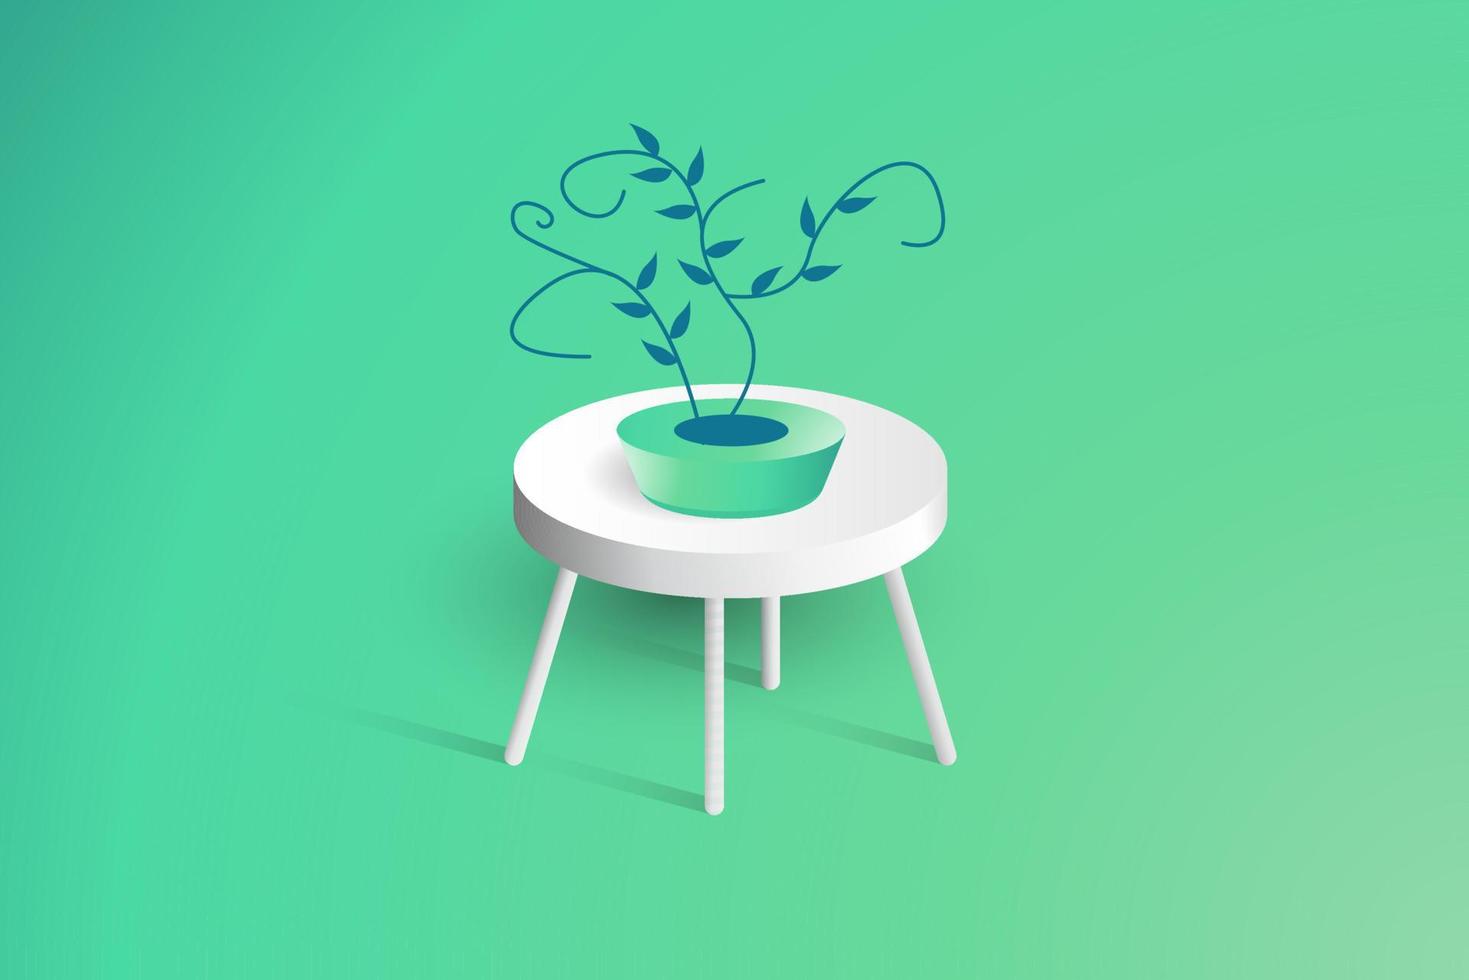 Mesa 3d con fondo verde turquesa. diseño realista del componente de la mesa de exhibición con un jarrón de flores en él vector